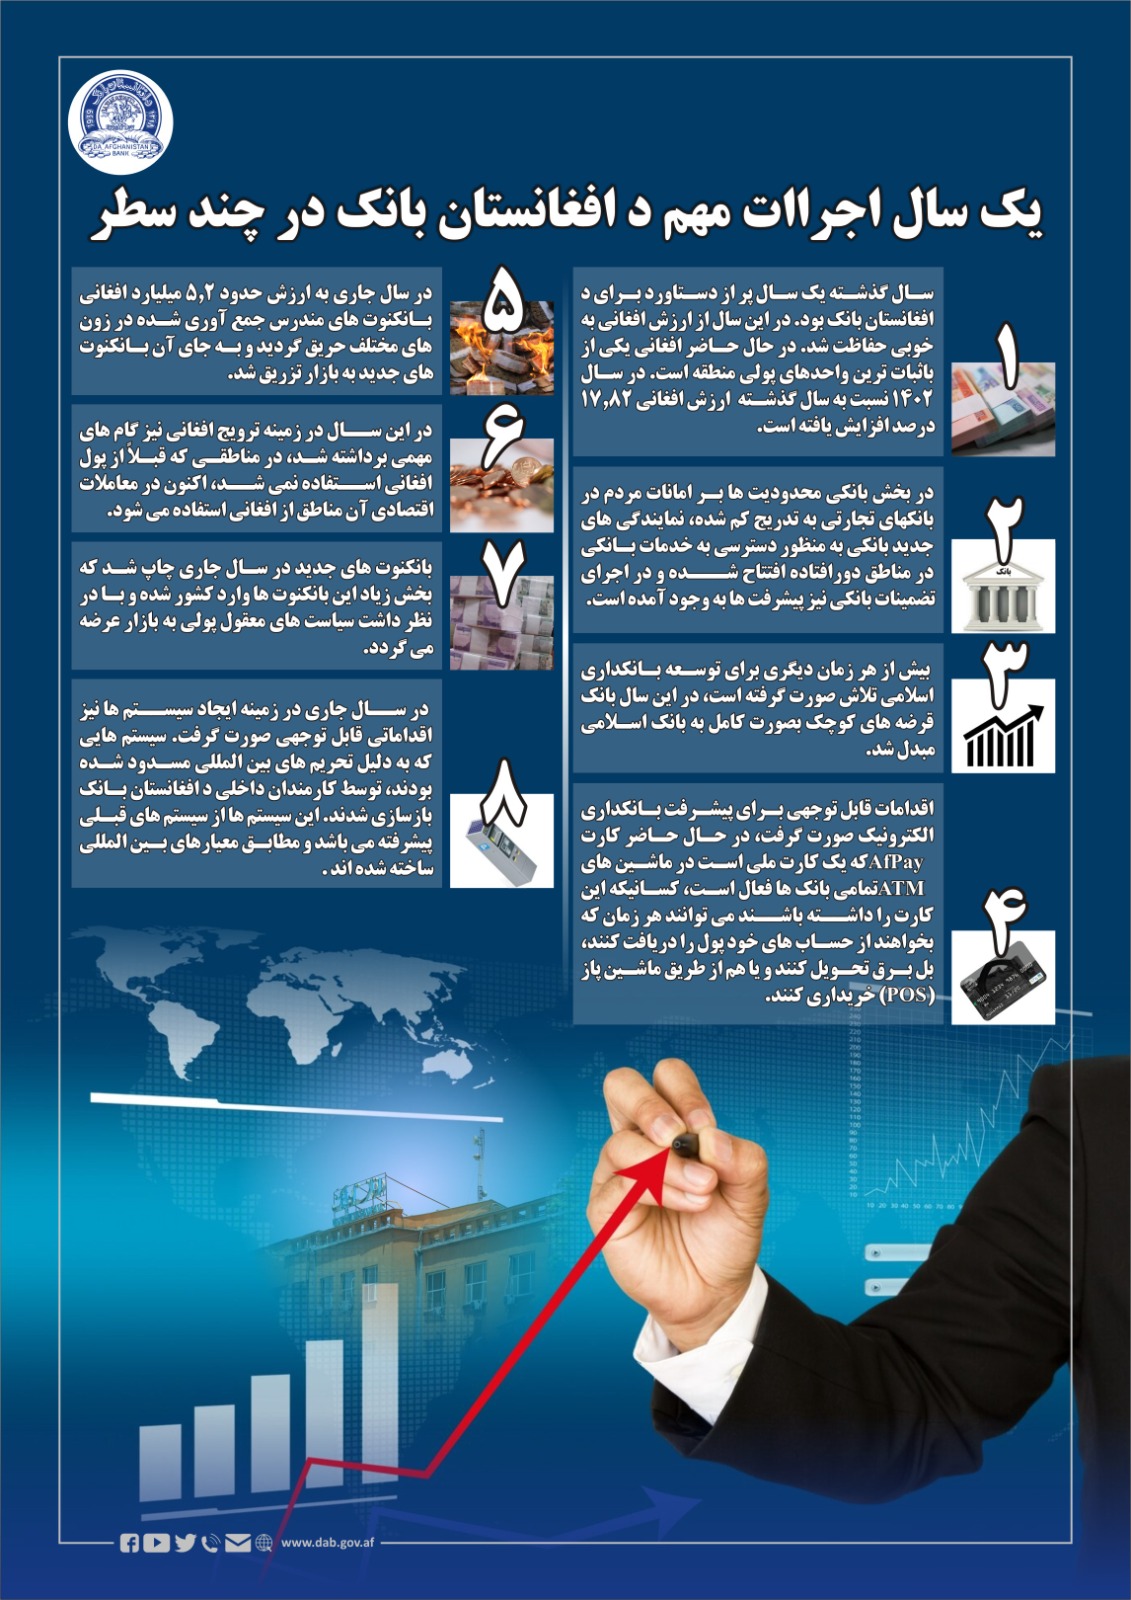 یک سال اجراات مهم د افغانستان بانک در چند سطر